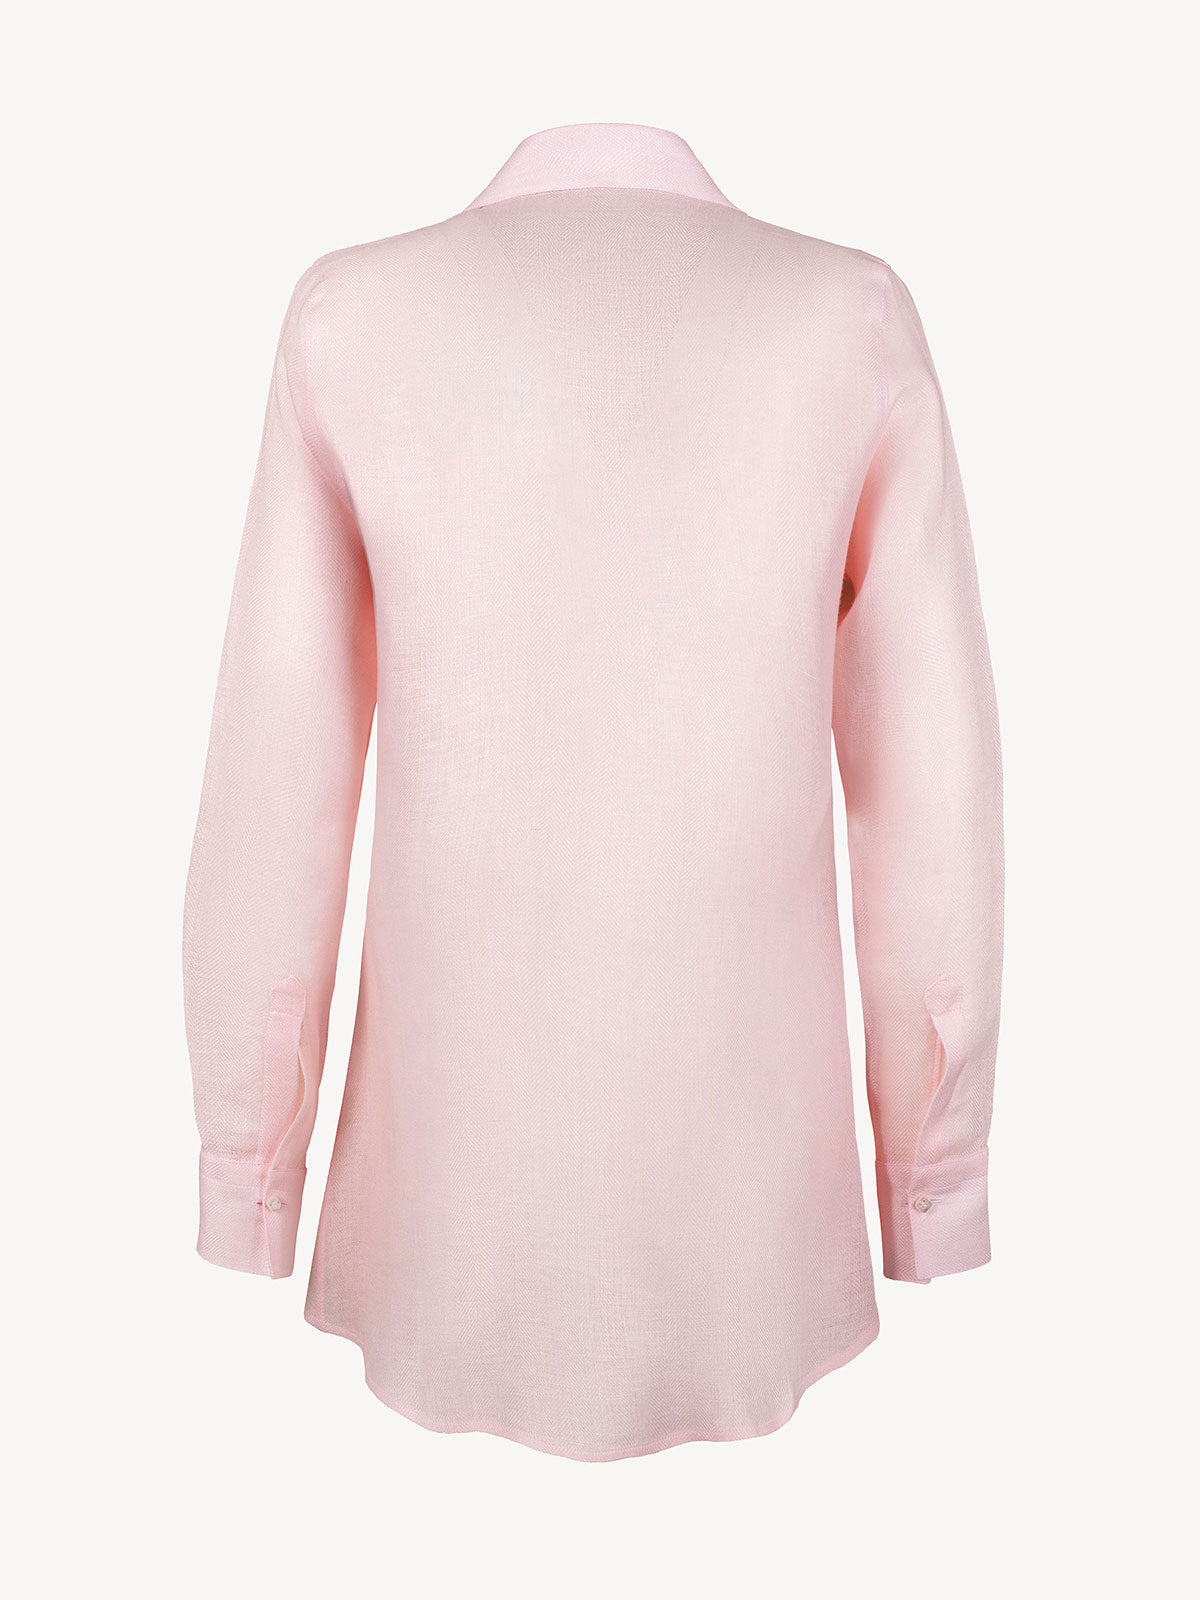 Camicia Chic Spigata 100% Capri pink linen shirt back